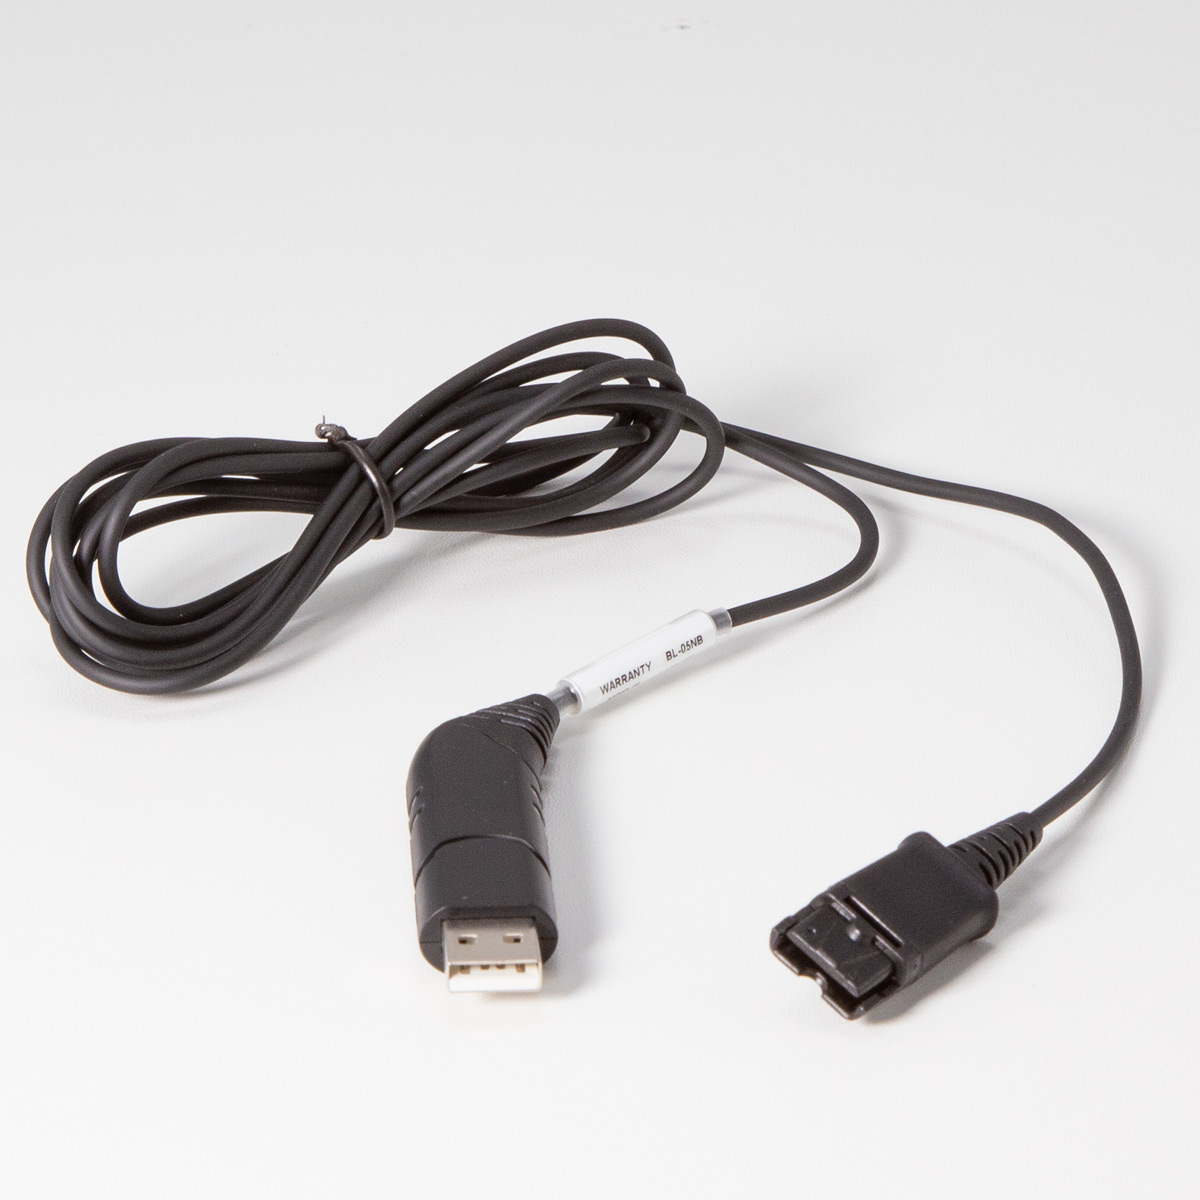 AUERSWALD Anschlusskabel USB für Laptop/PC für H200